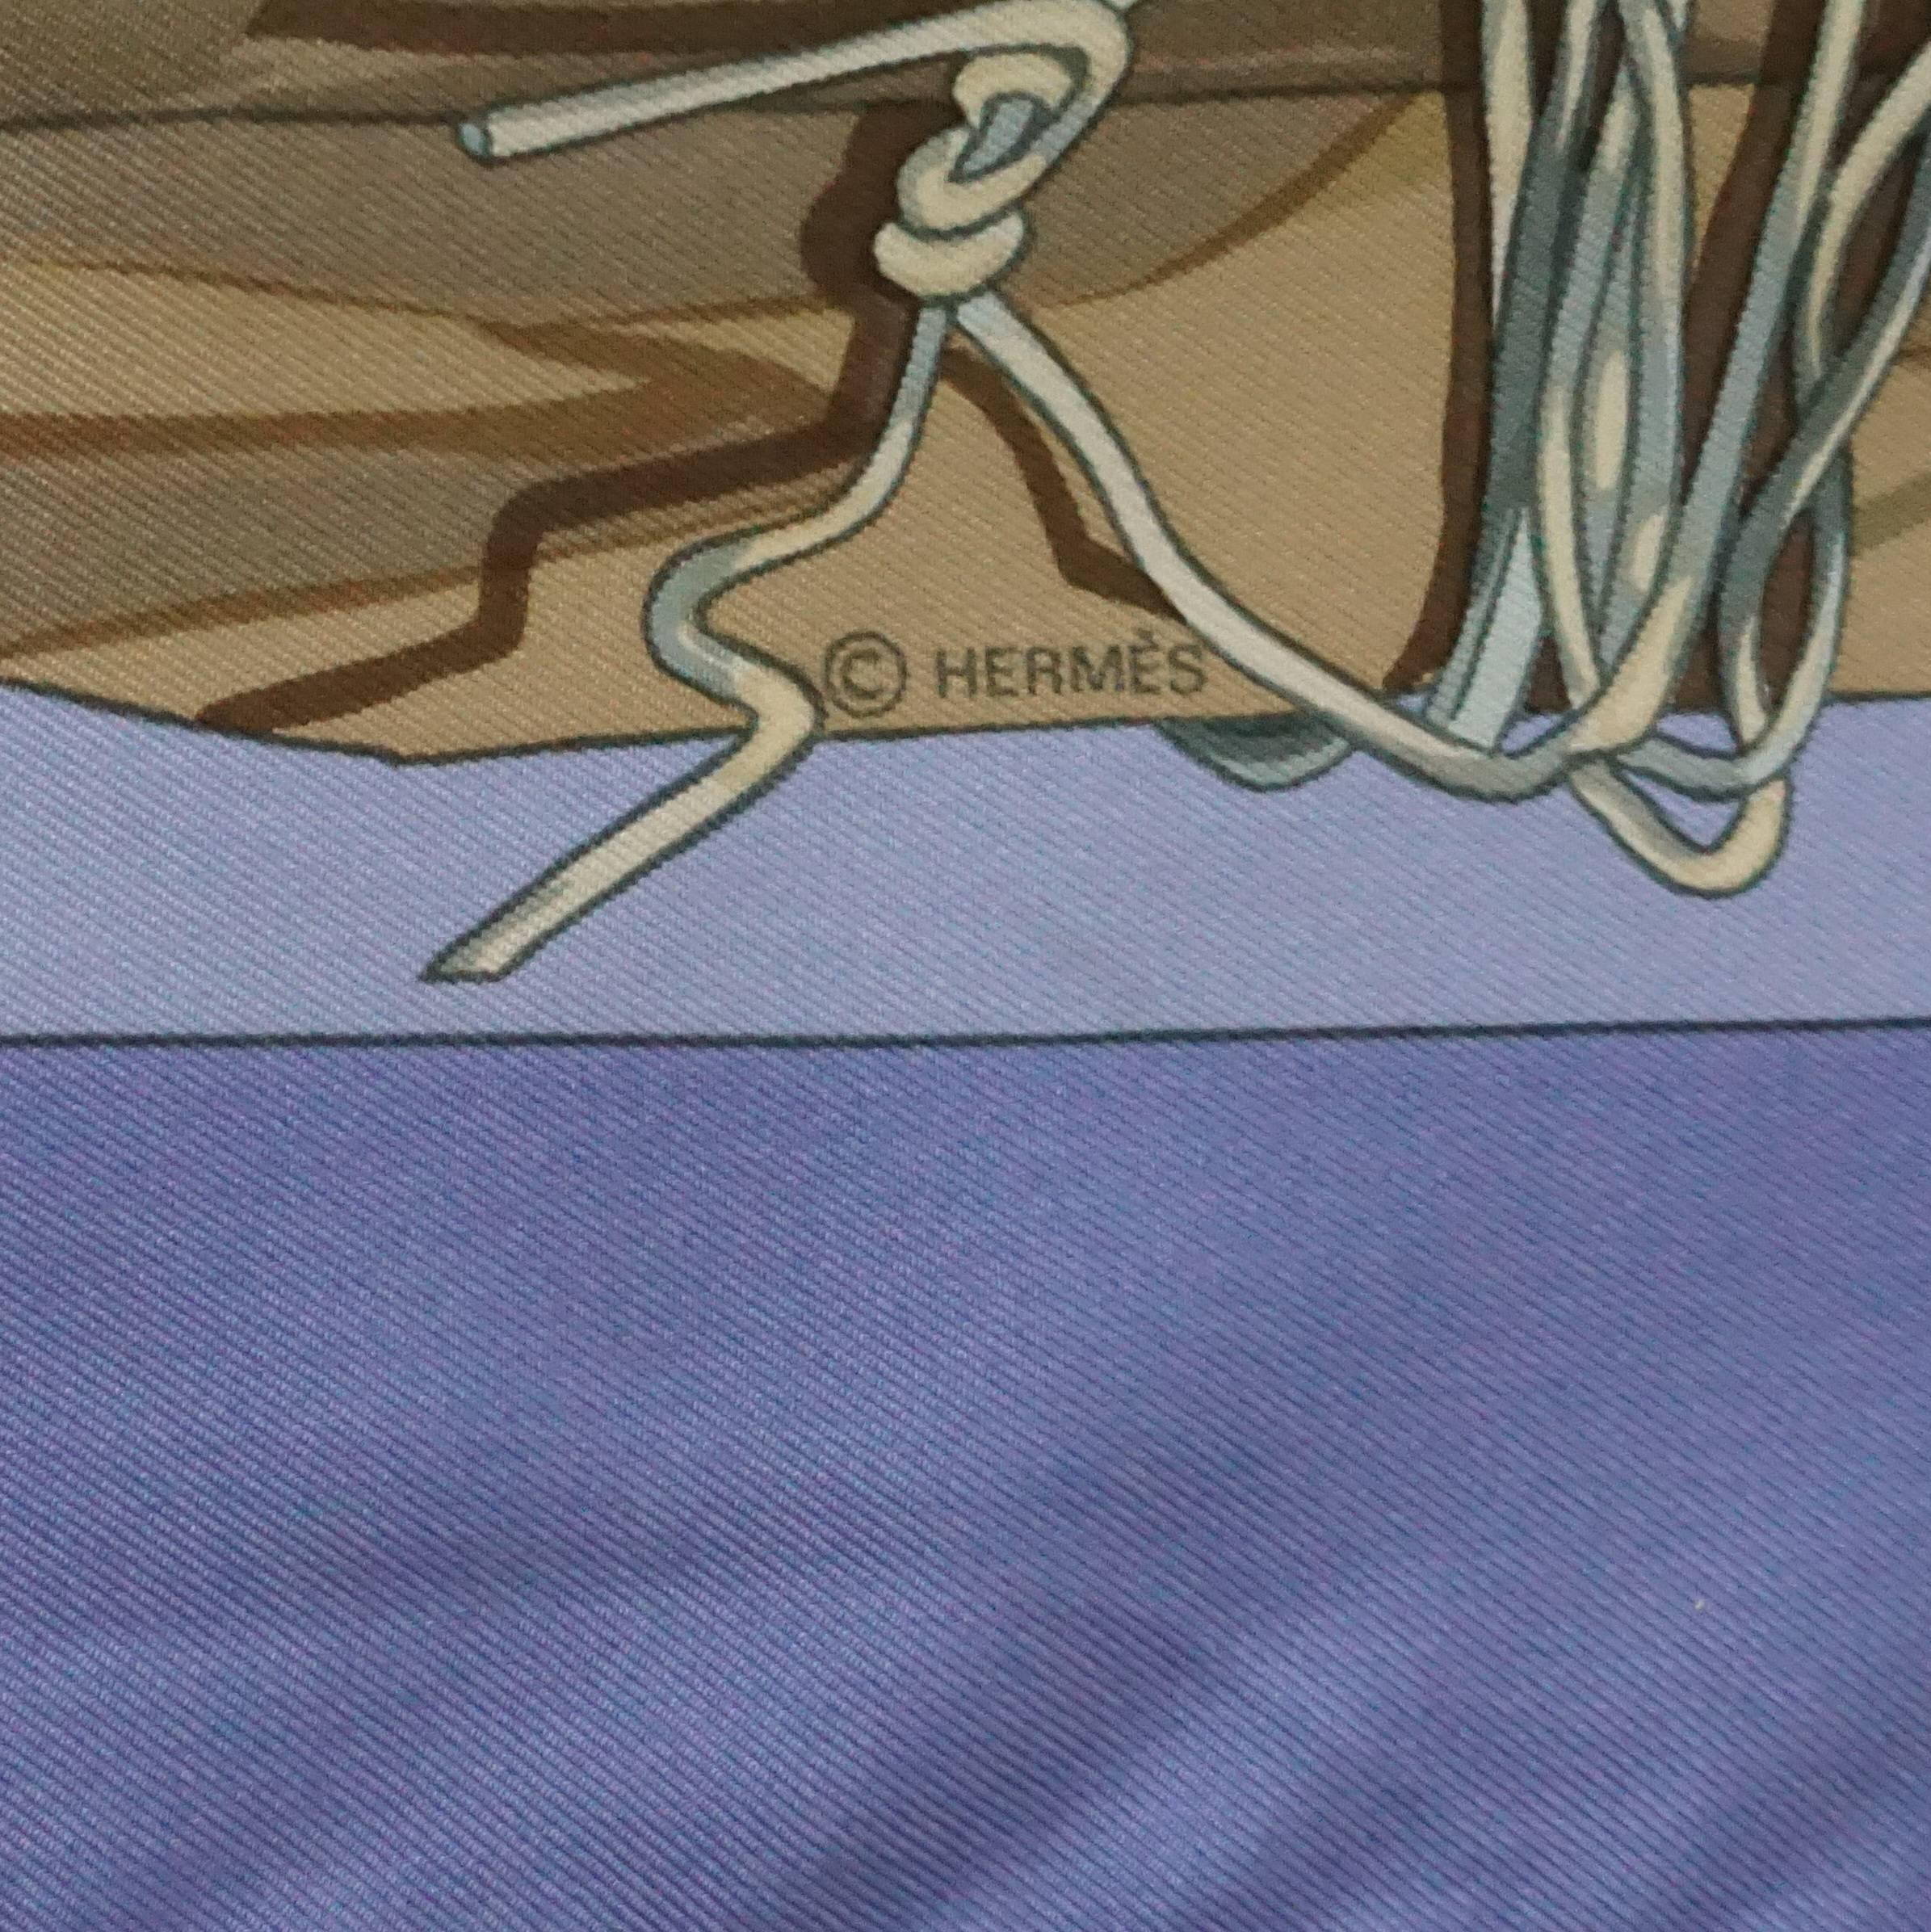 Hermes Periwinkle 